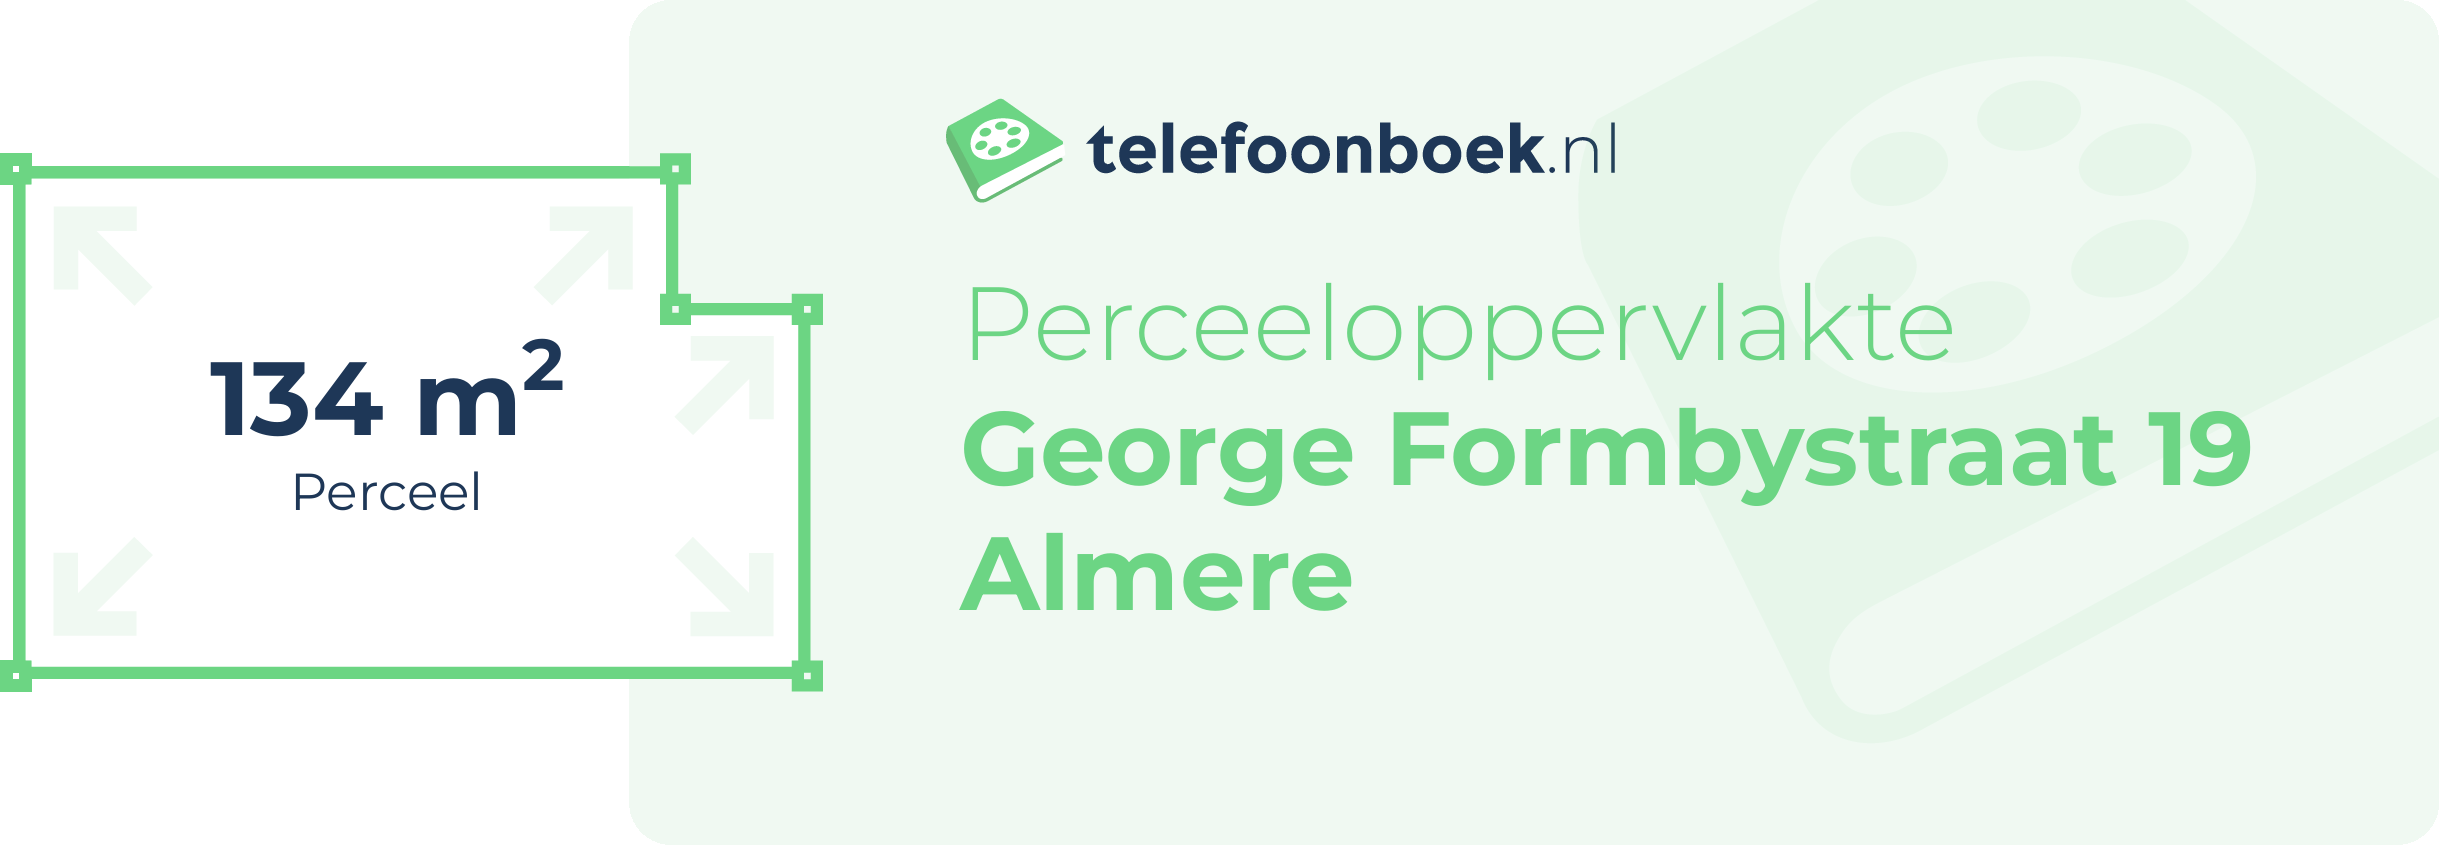 Perceeloppervlakte George Formbystraat 19 Almere